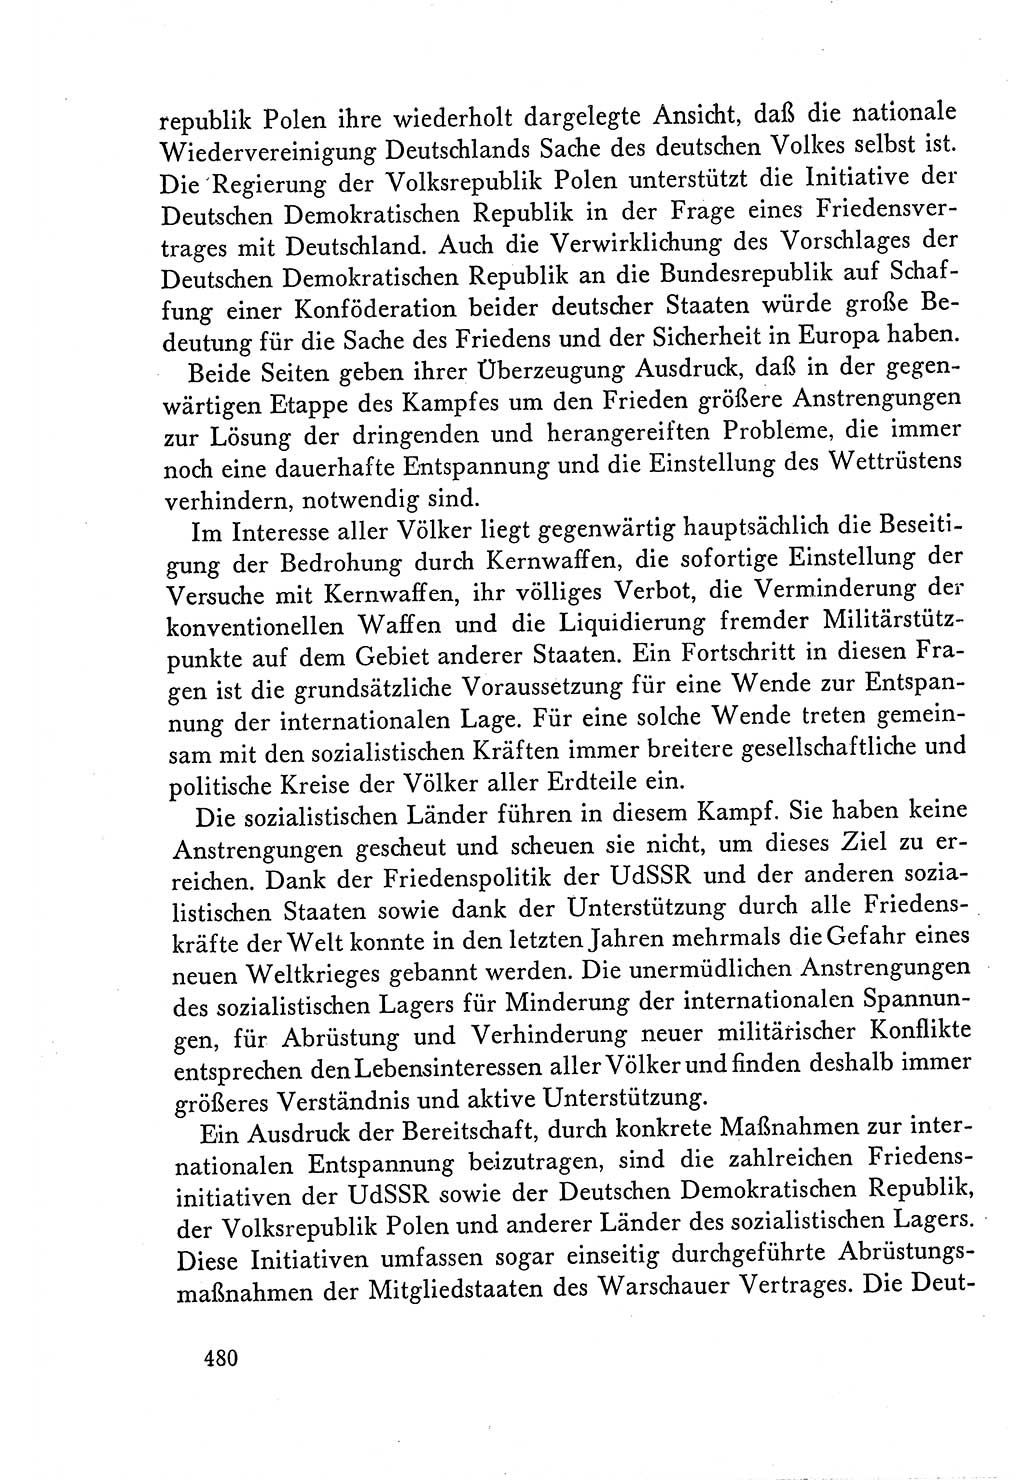 Dokumente der Sozialistischen Einheitspartei Deutschlands (SED) [Deutsche Demokratische Republik (DDR)] 1958-1959, Seite 480 (Dok. SED DDR 1958-1959, S. 480)